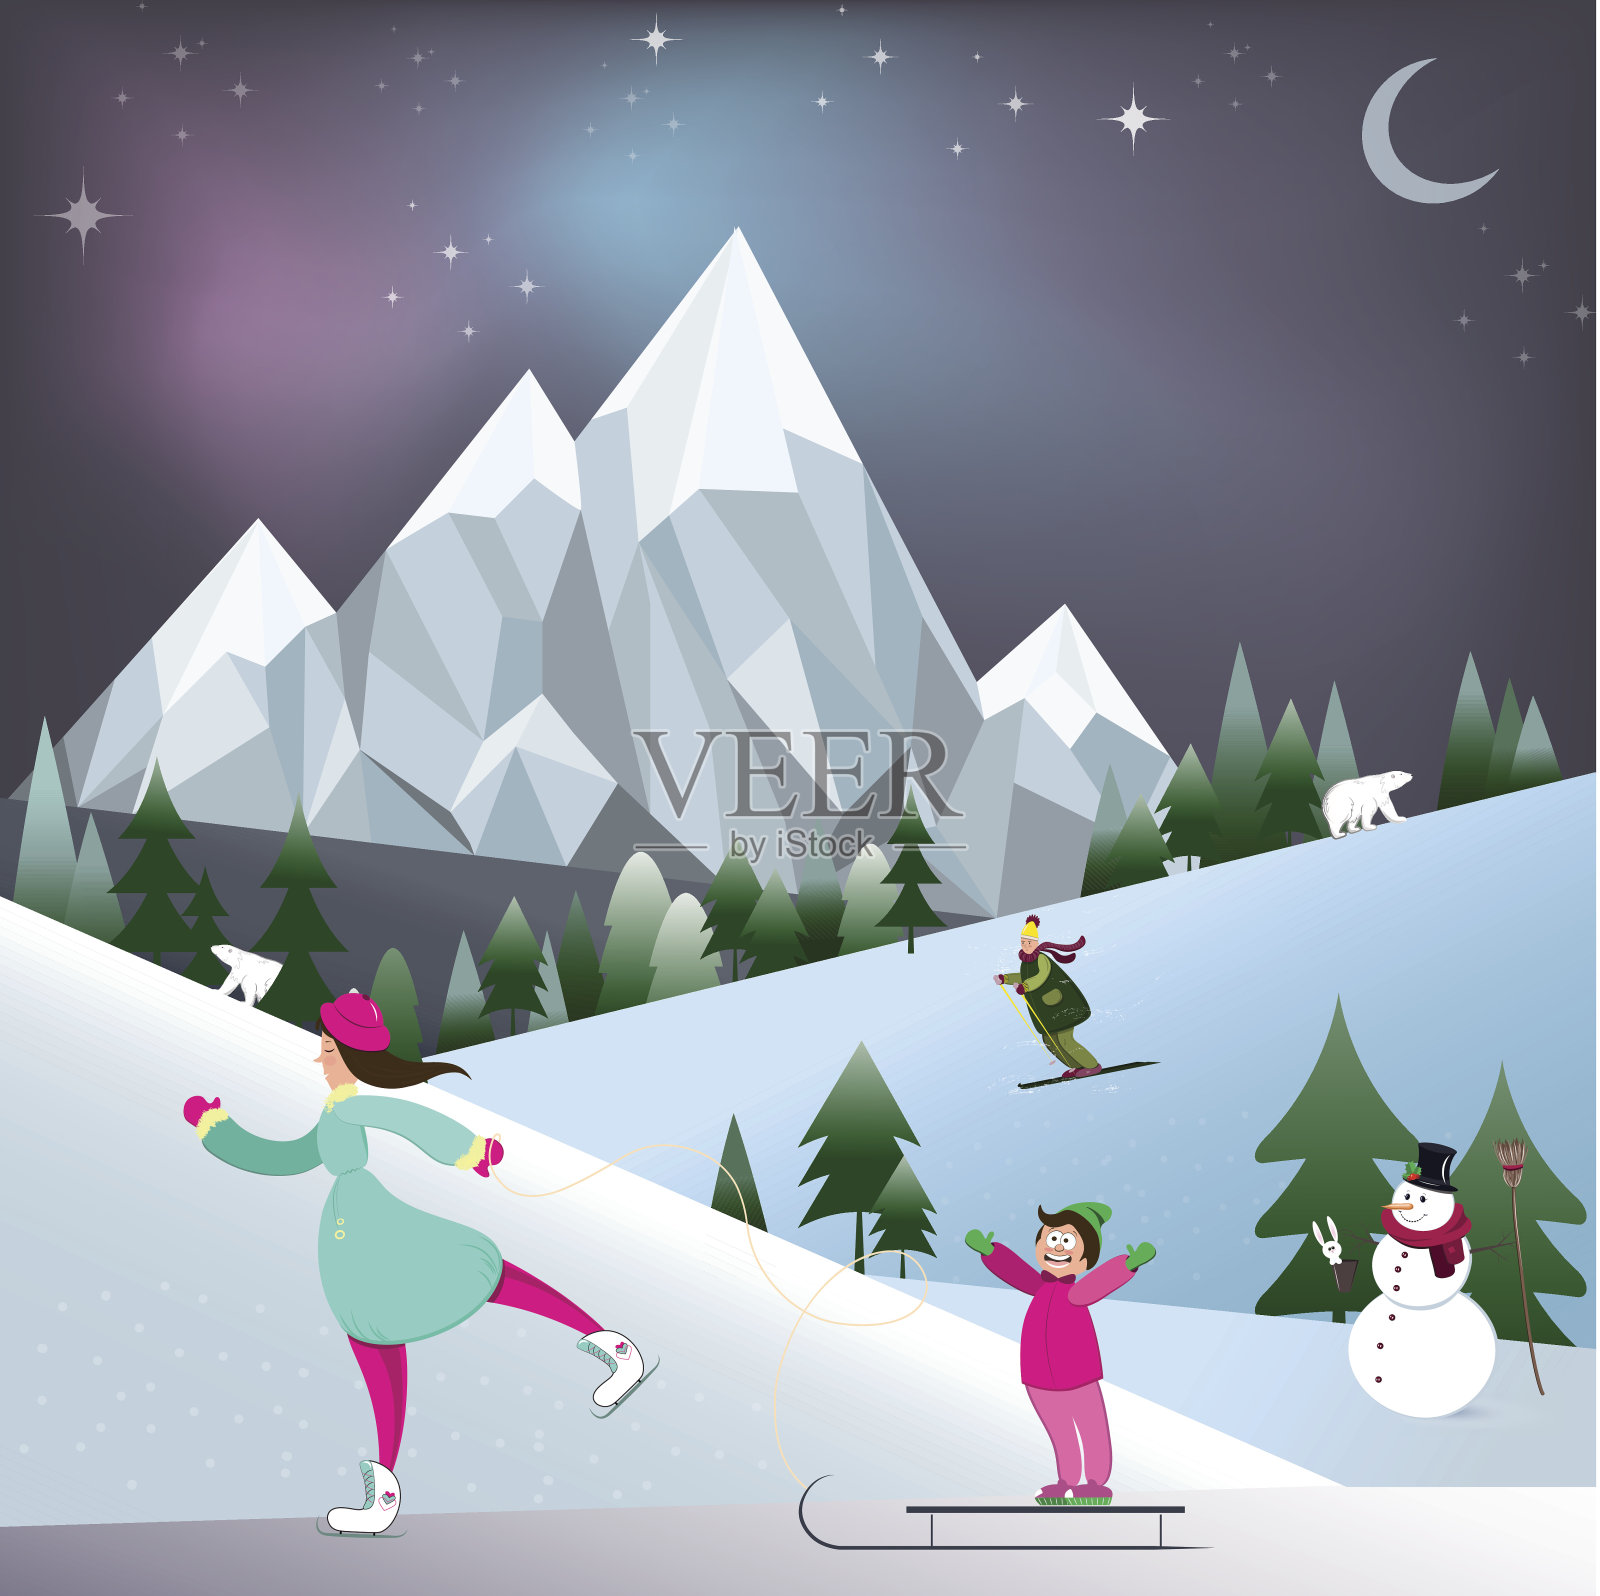 妈妈穿着溜冰鞋和她的儿子玩雪橇。卡通冬天森林与白熊和雪人。矢量图插画图片素材